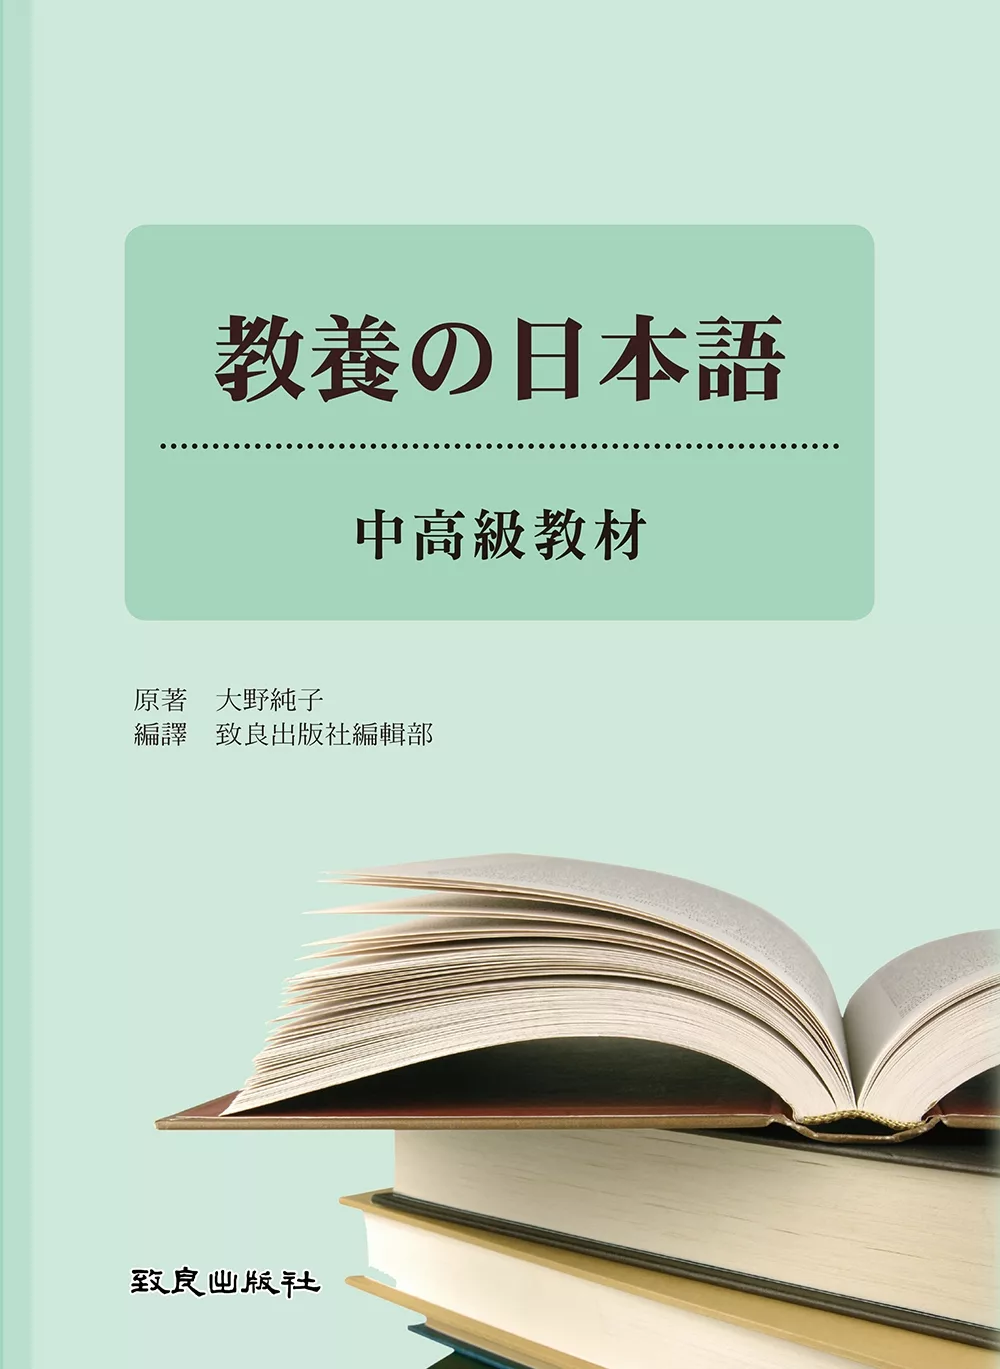 教養の日本語-中高級教材